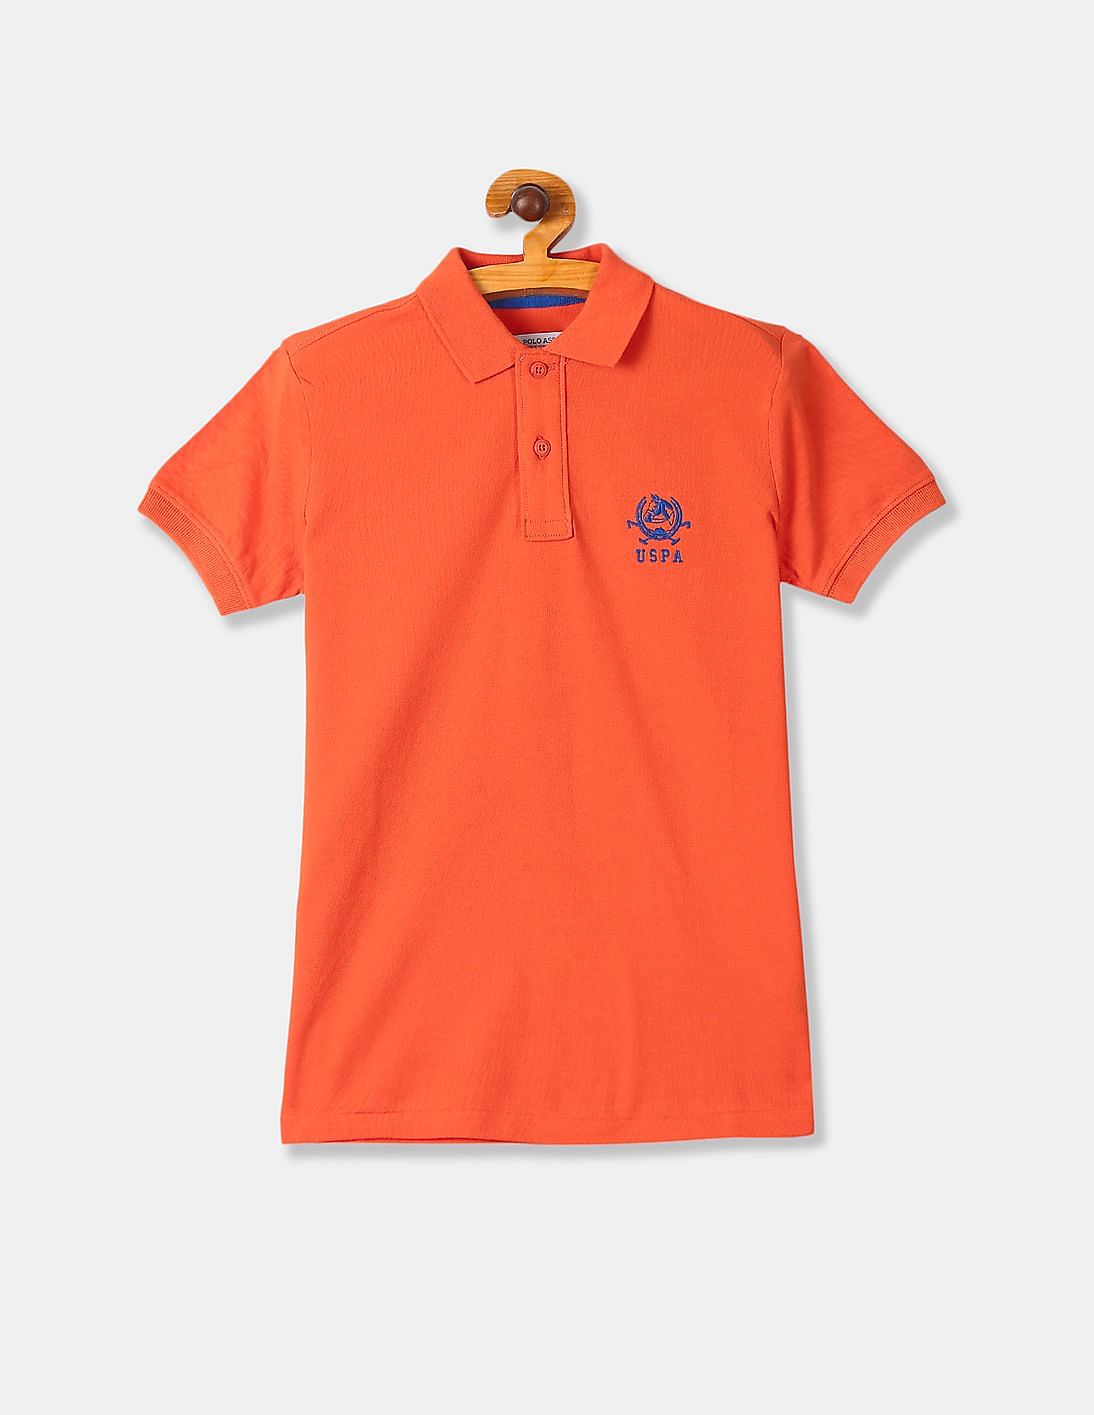 Buy U.S. Polo Assn. Kids Boys Boys Orange Solid Pique Polo Shirt ...